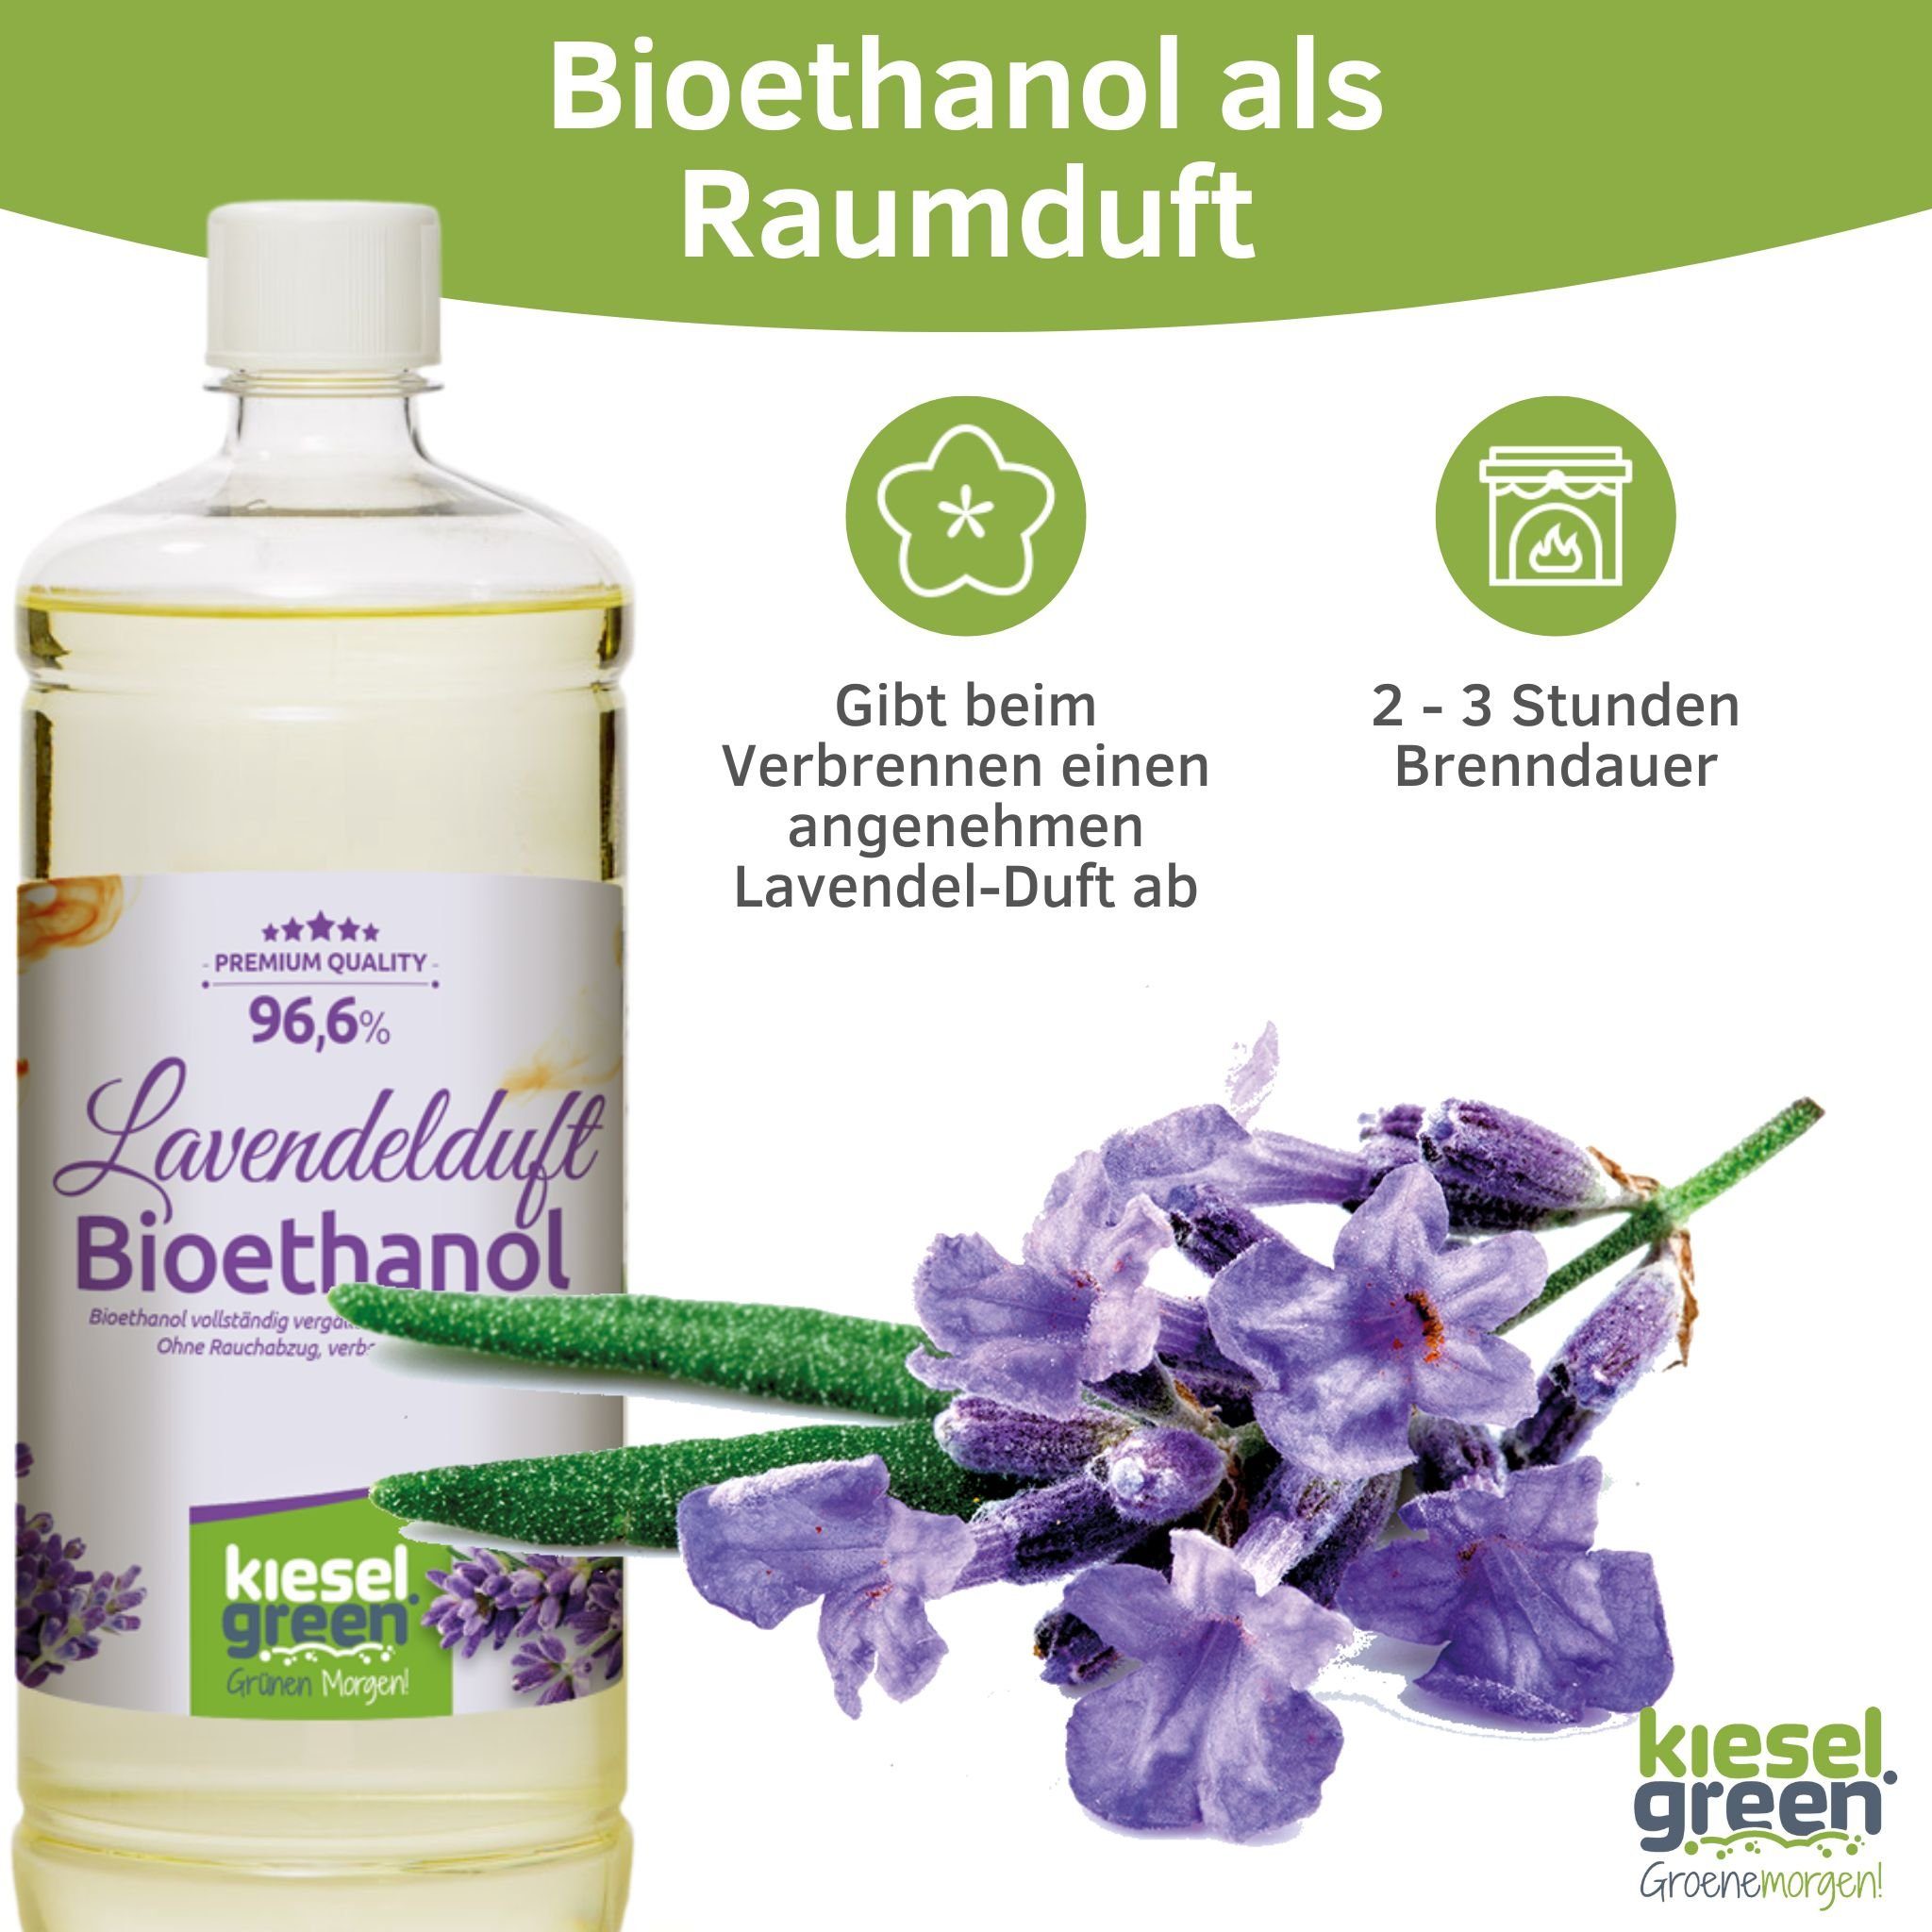 + 12 Lavendelduft + 6x x Sets 6x KieselGreen 6x Bioethanol KieselGreen Liter Flasche Bioethanol Geruchlos 6x - 1